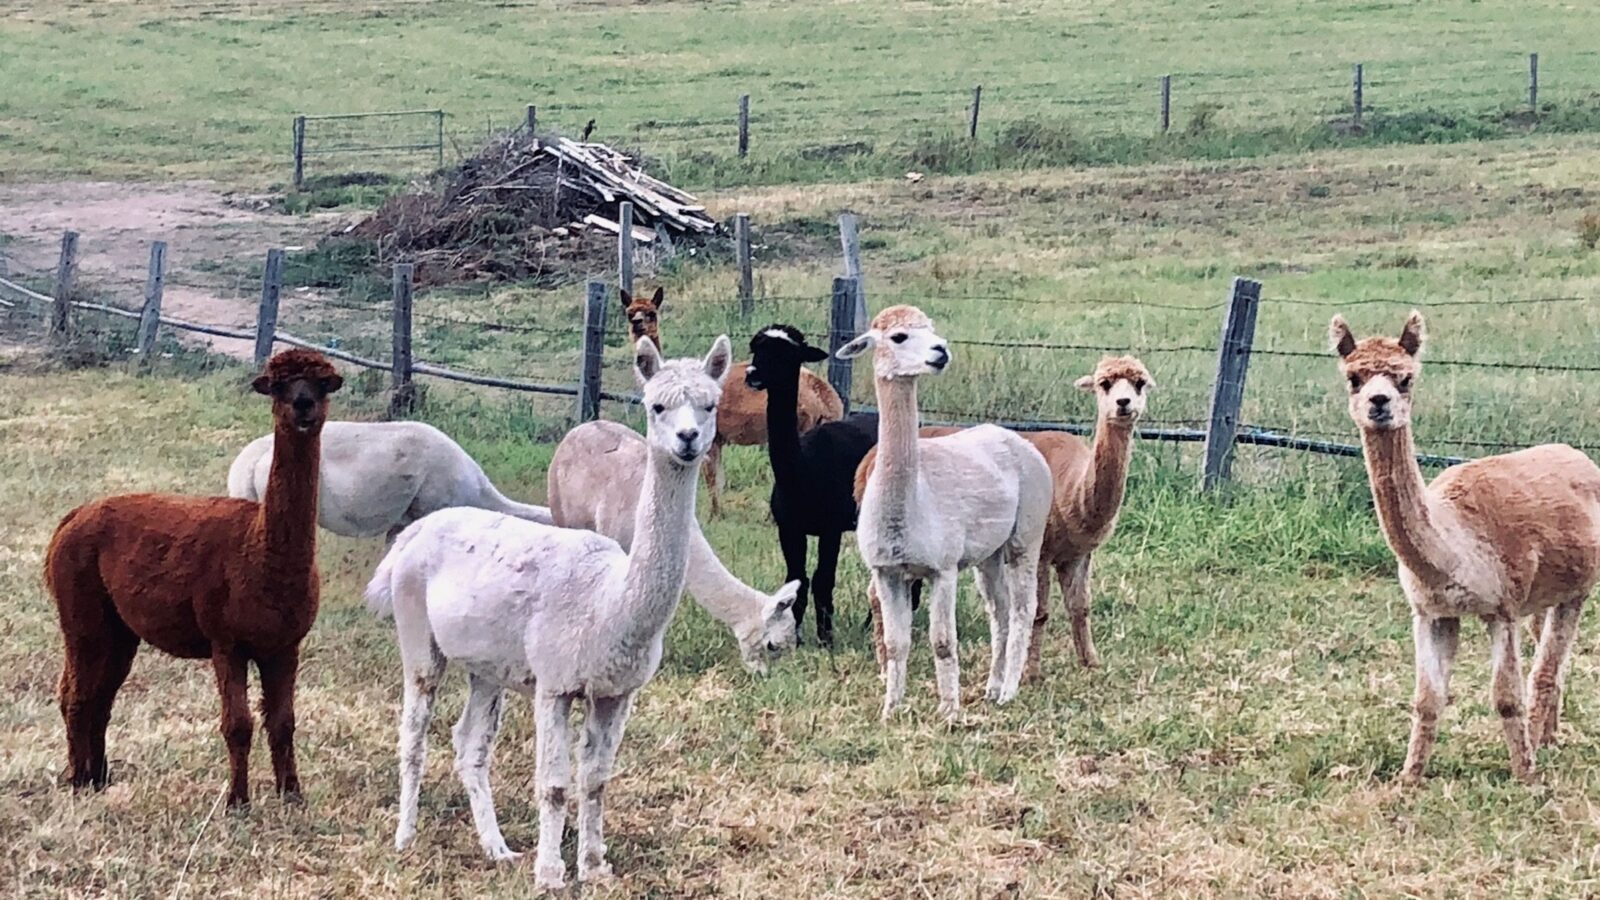 Take a tour of our alpacas